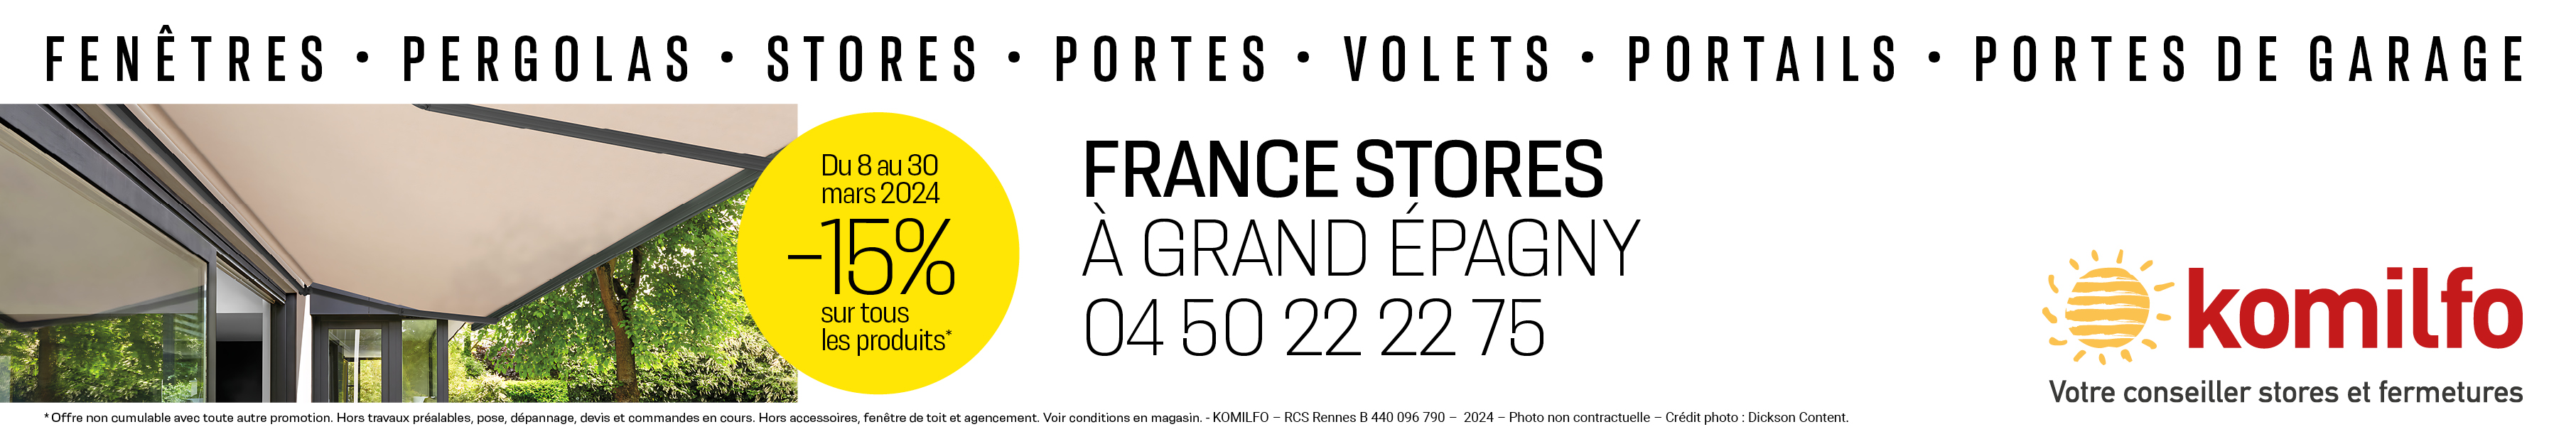 Publicité - France Stores 